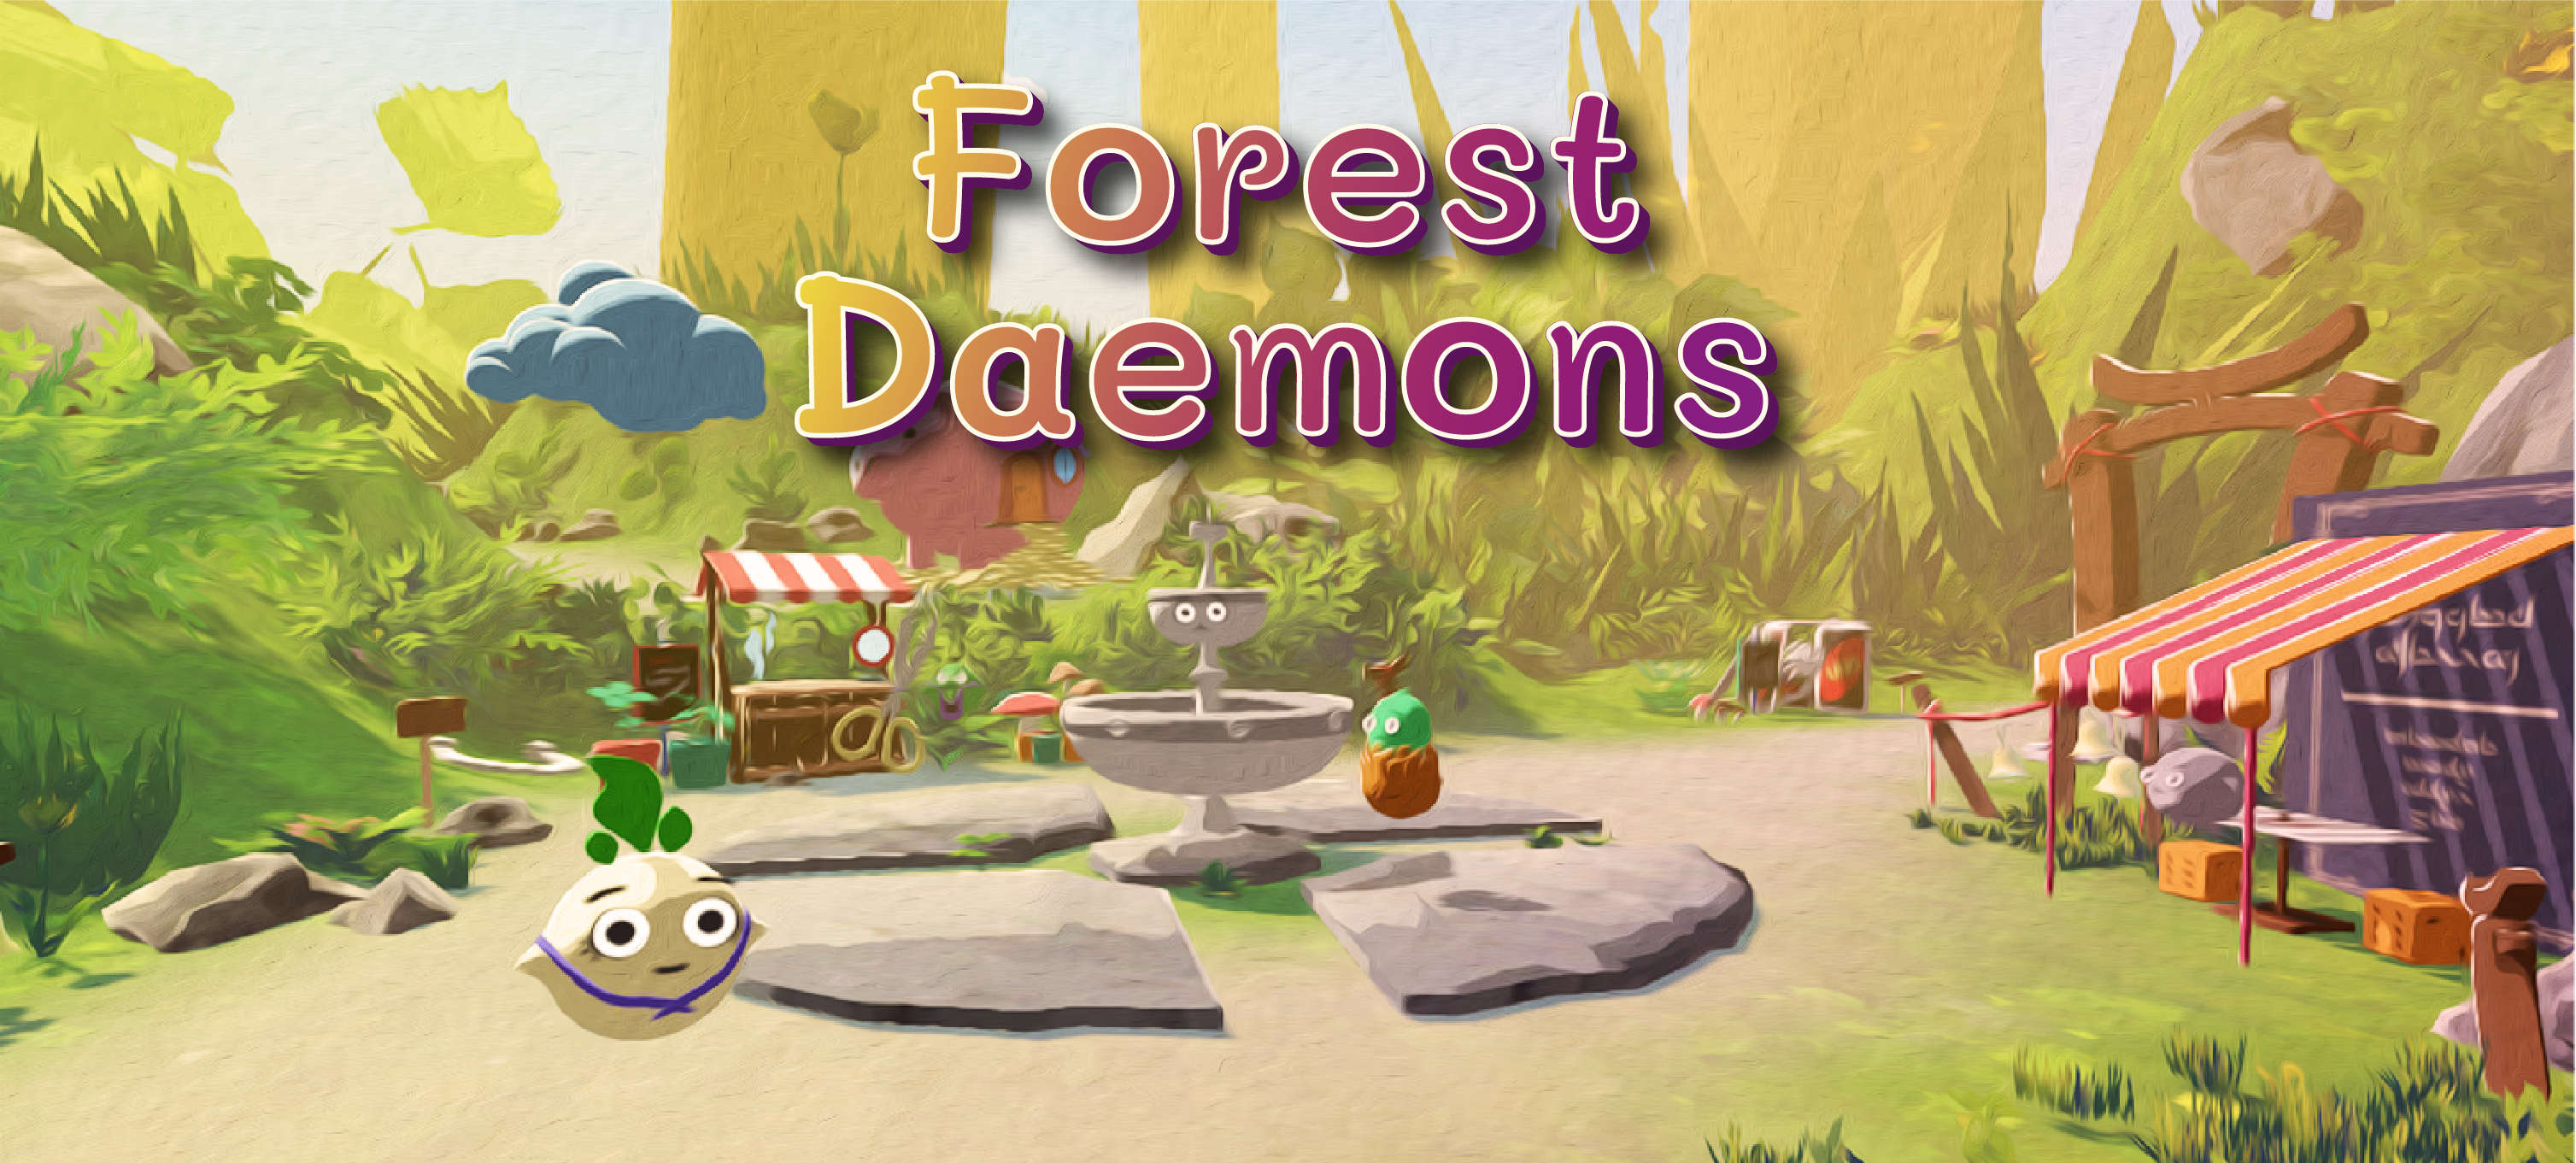 Forest Daemons